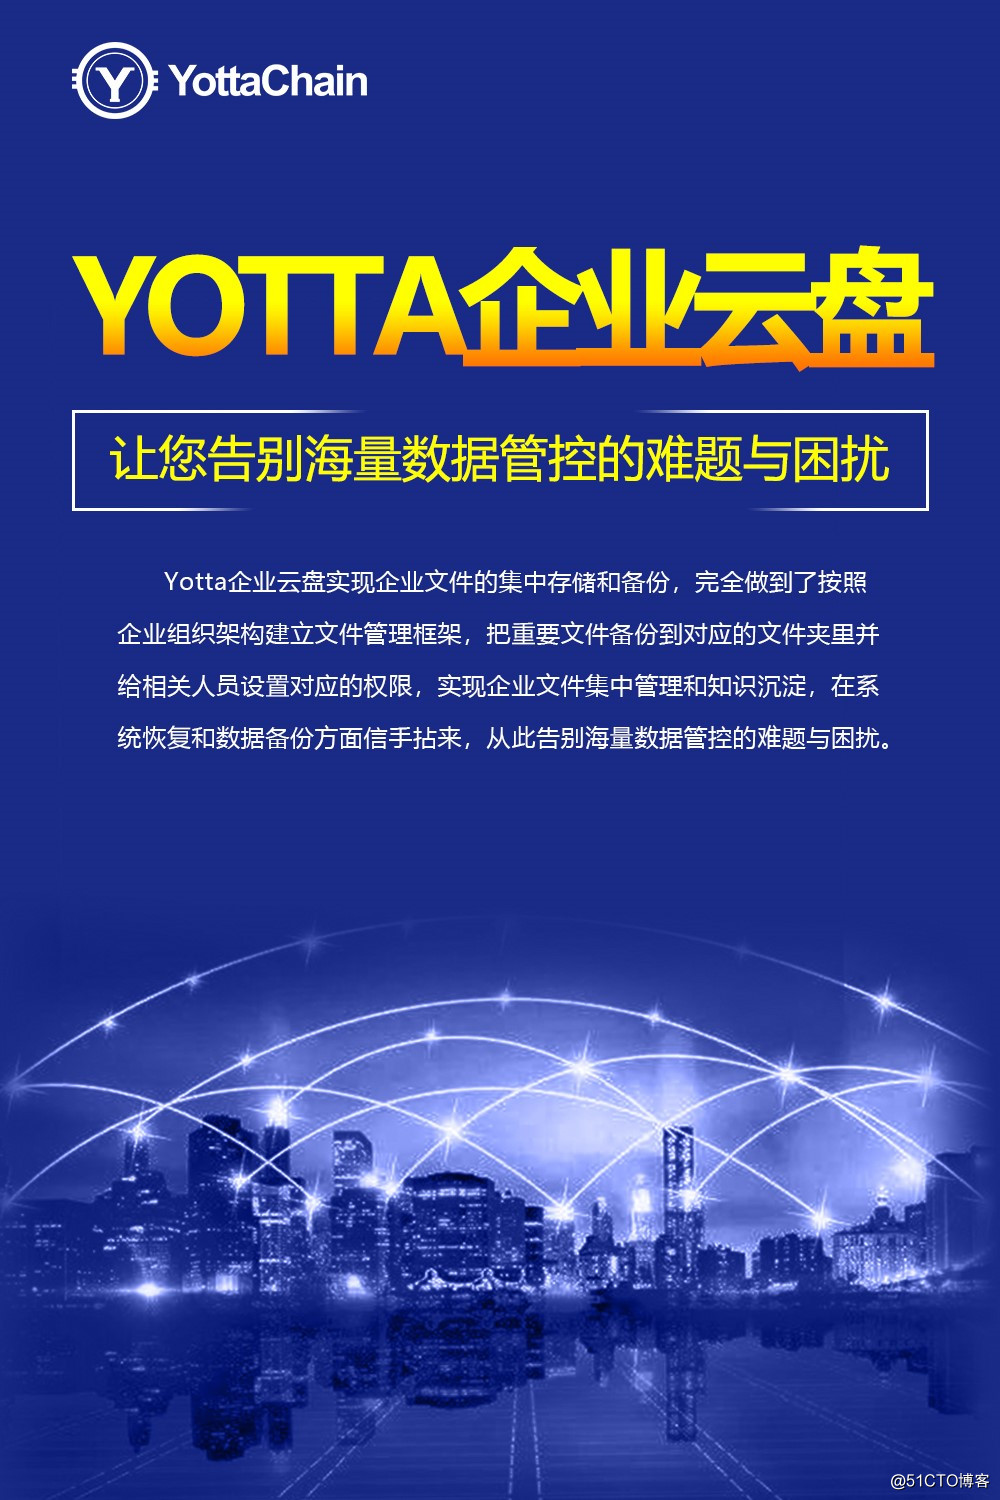 Yotta企业云盘助力物流行业协同办公